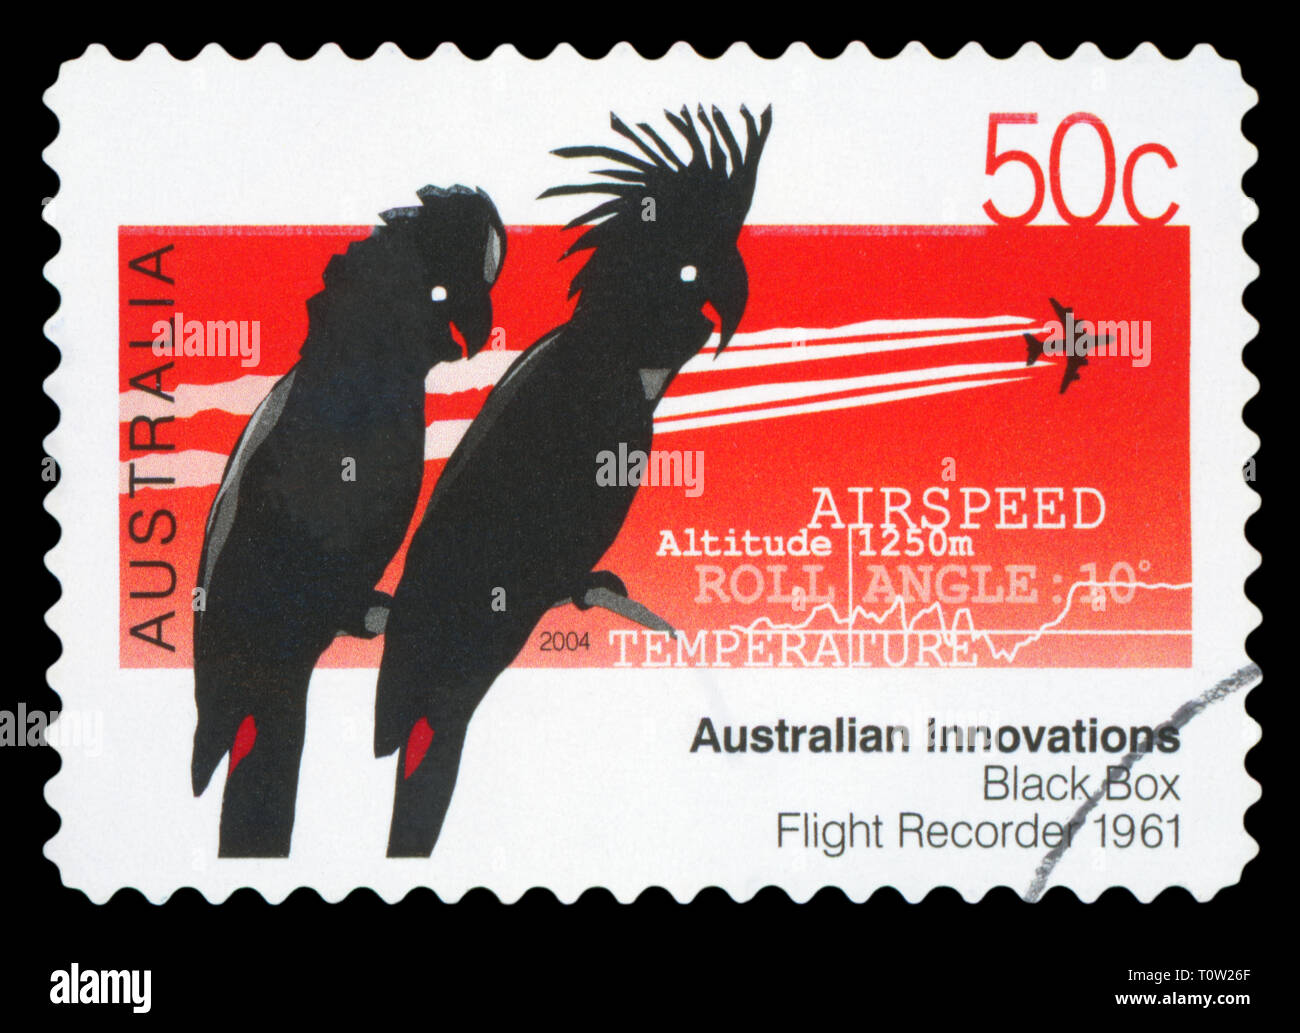 AUSTRALIA - circa 2004: utilizzate un francobollo da Australia, celebrando innovazioni australiano - la scatola nera registratore di volo, circa 2004. Foto Stock